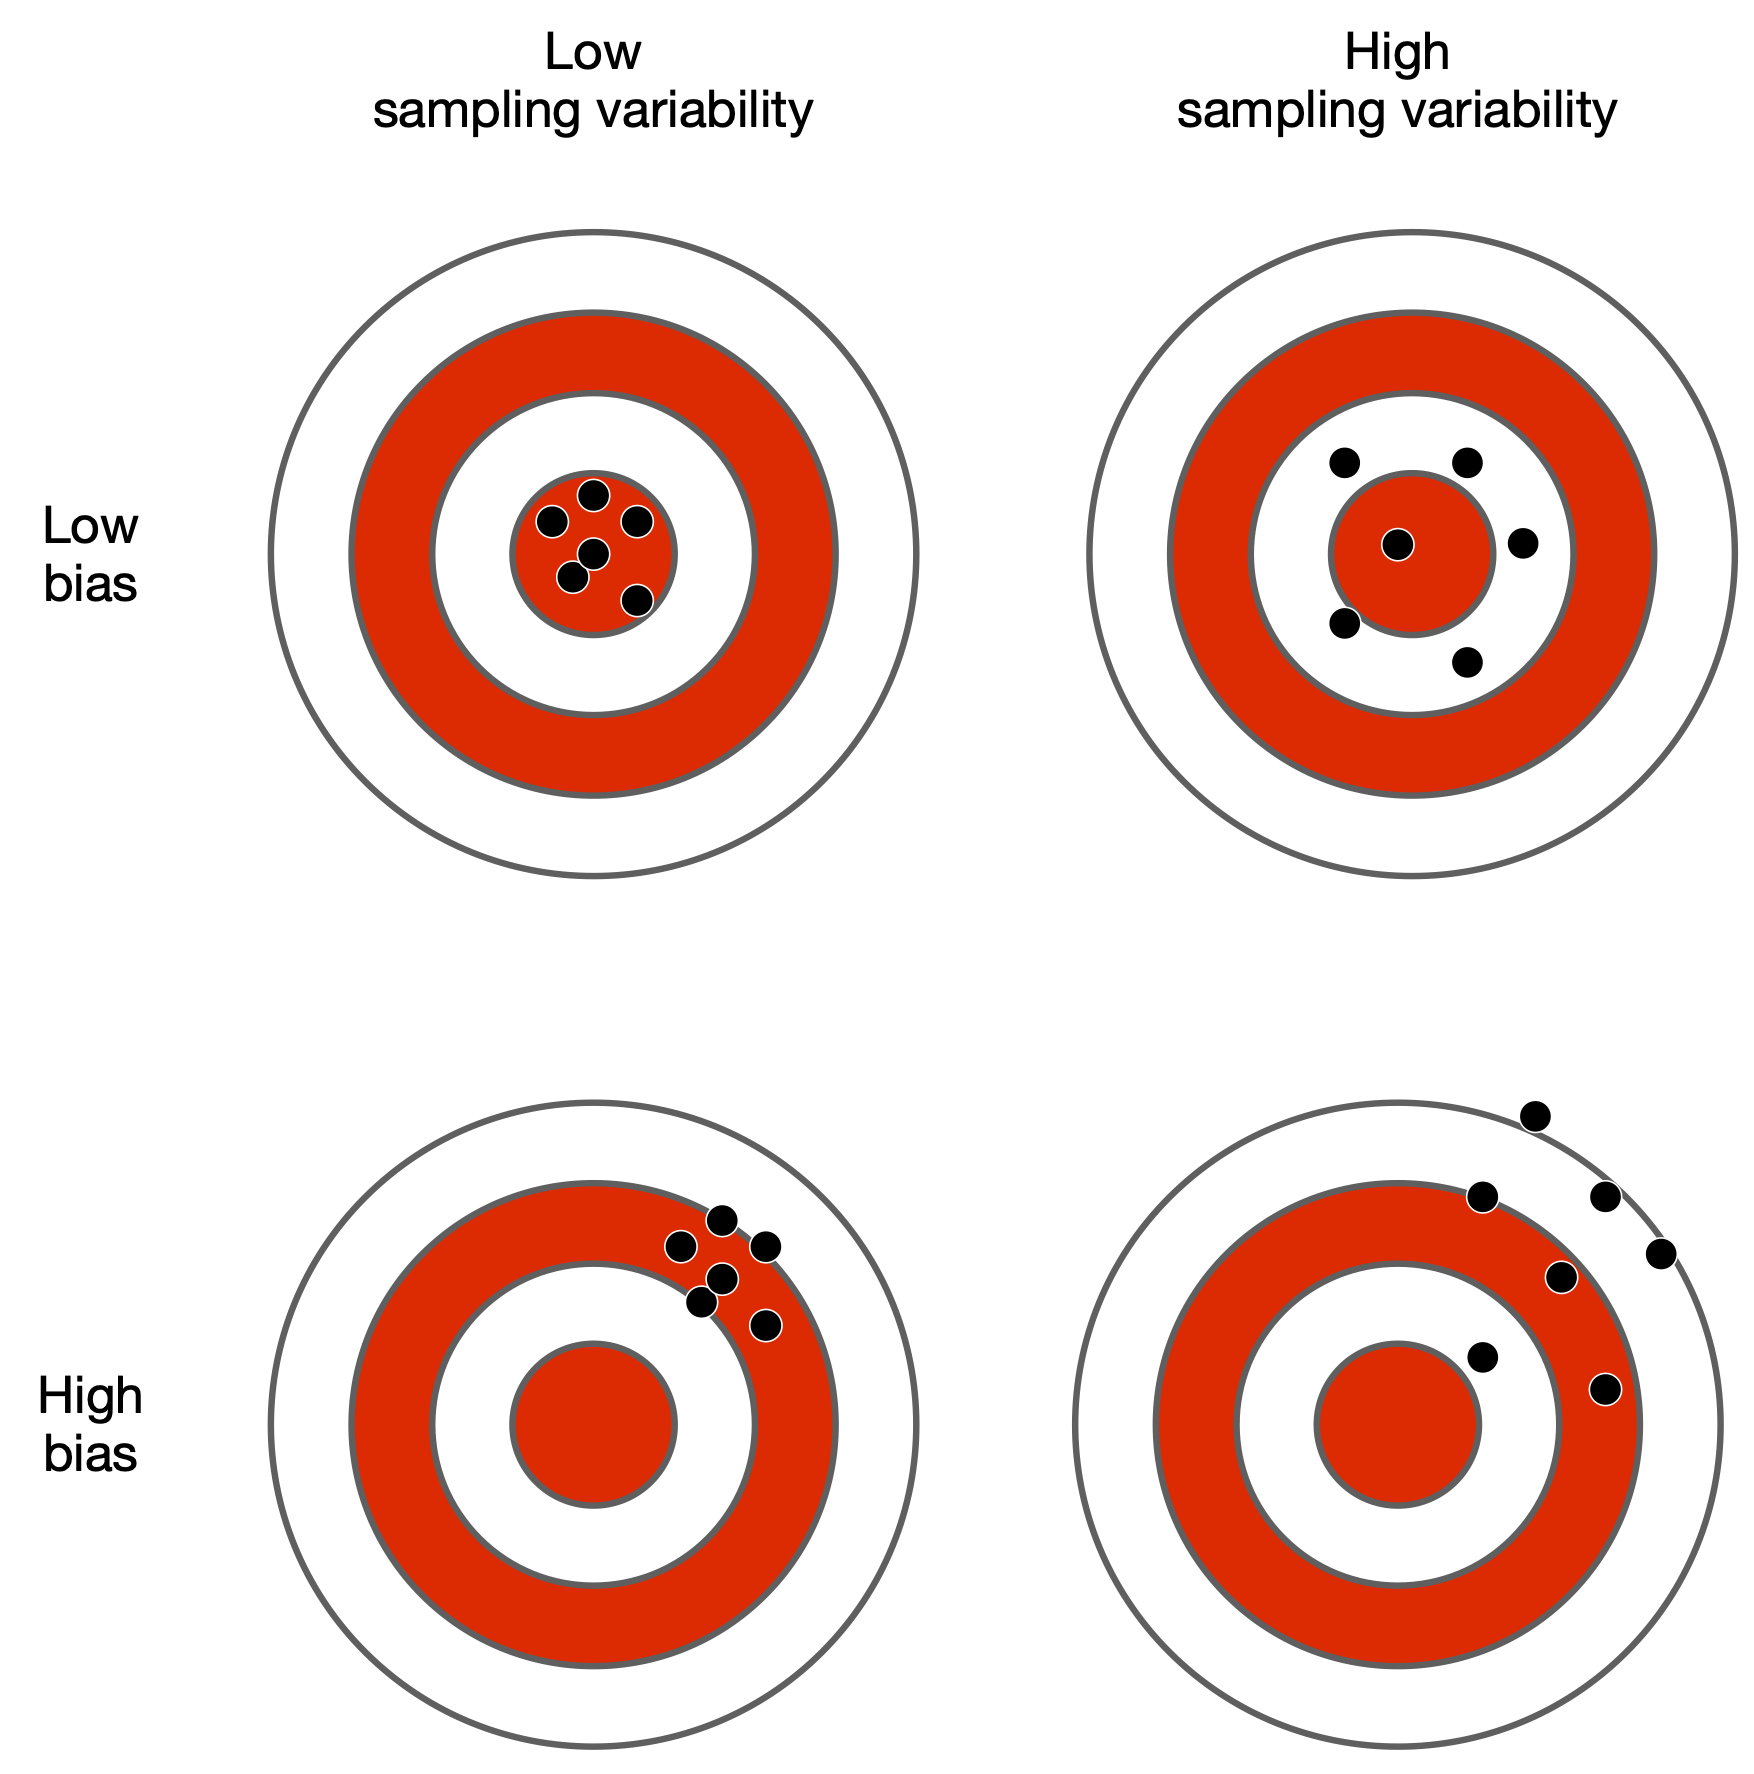 Bias and sampling variability